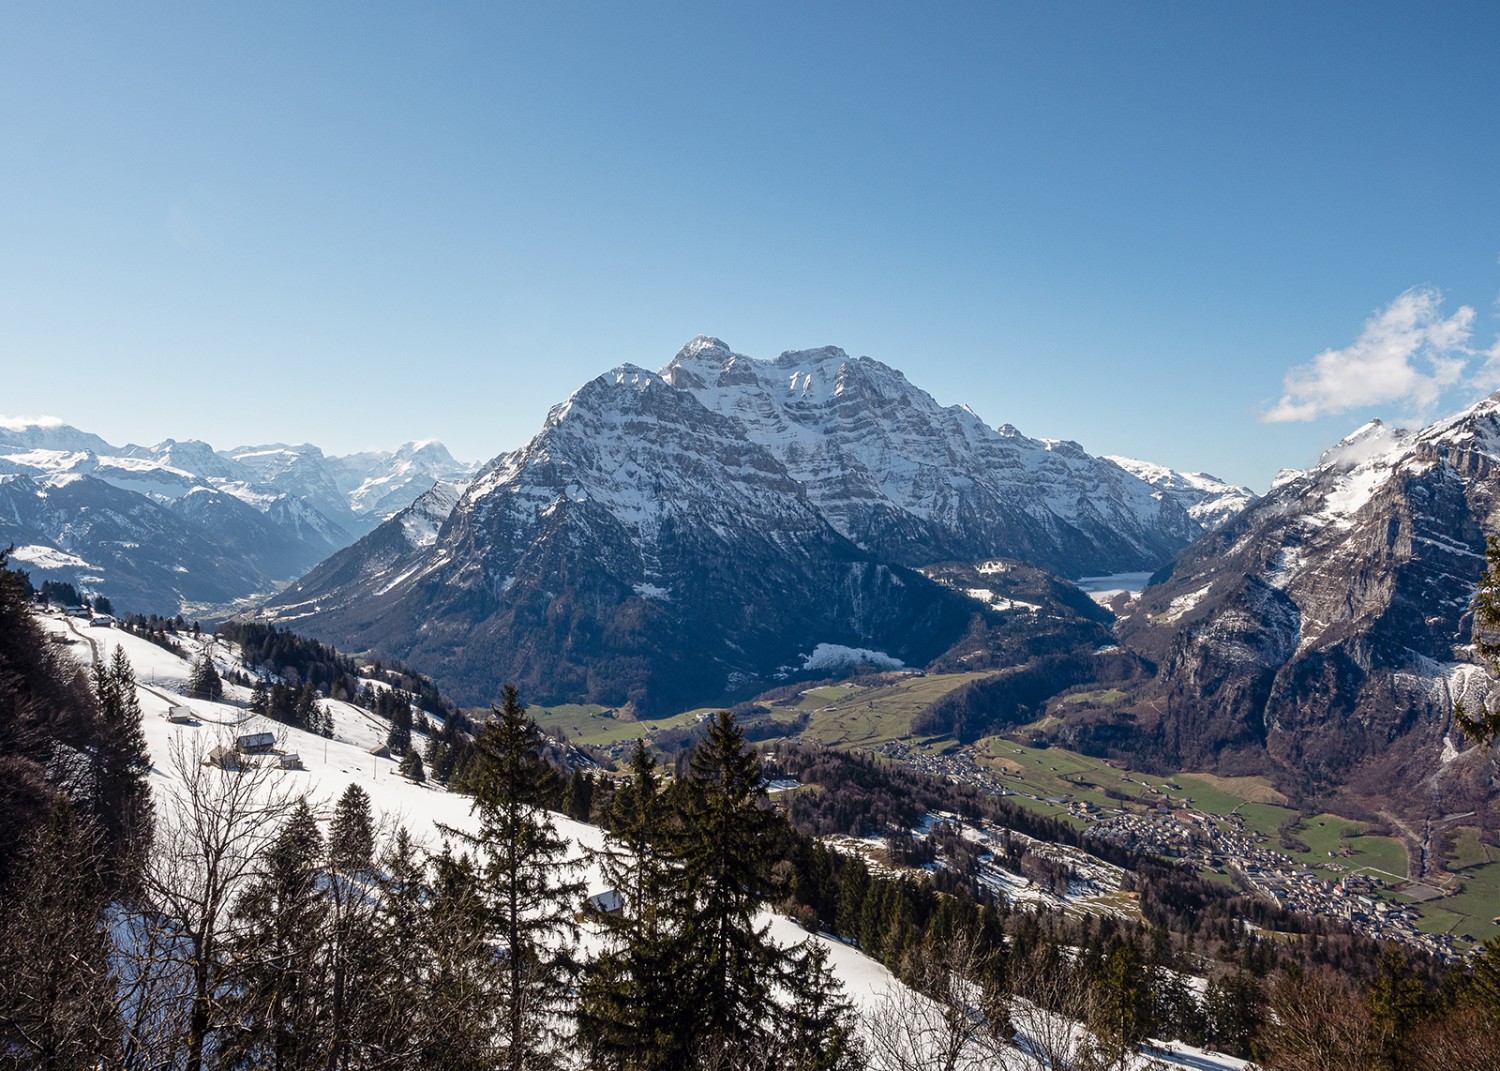 Vue sur le massif du Glärnisch depuis la terrasse de l’auberge de Fronalp. Photos: Barbara Graber